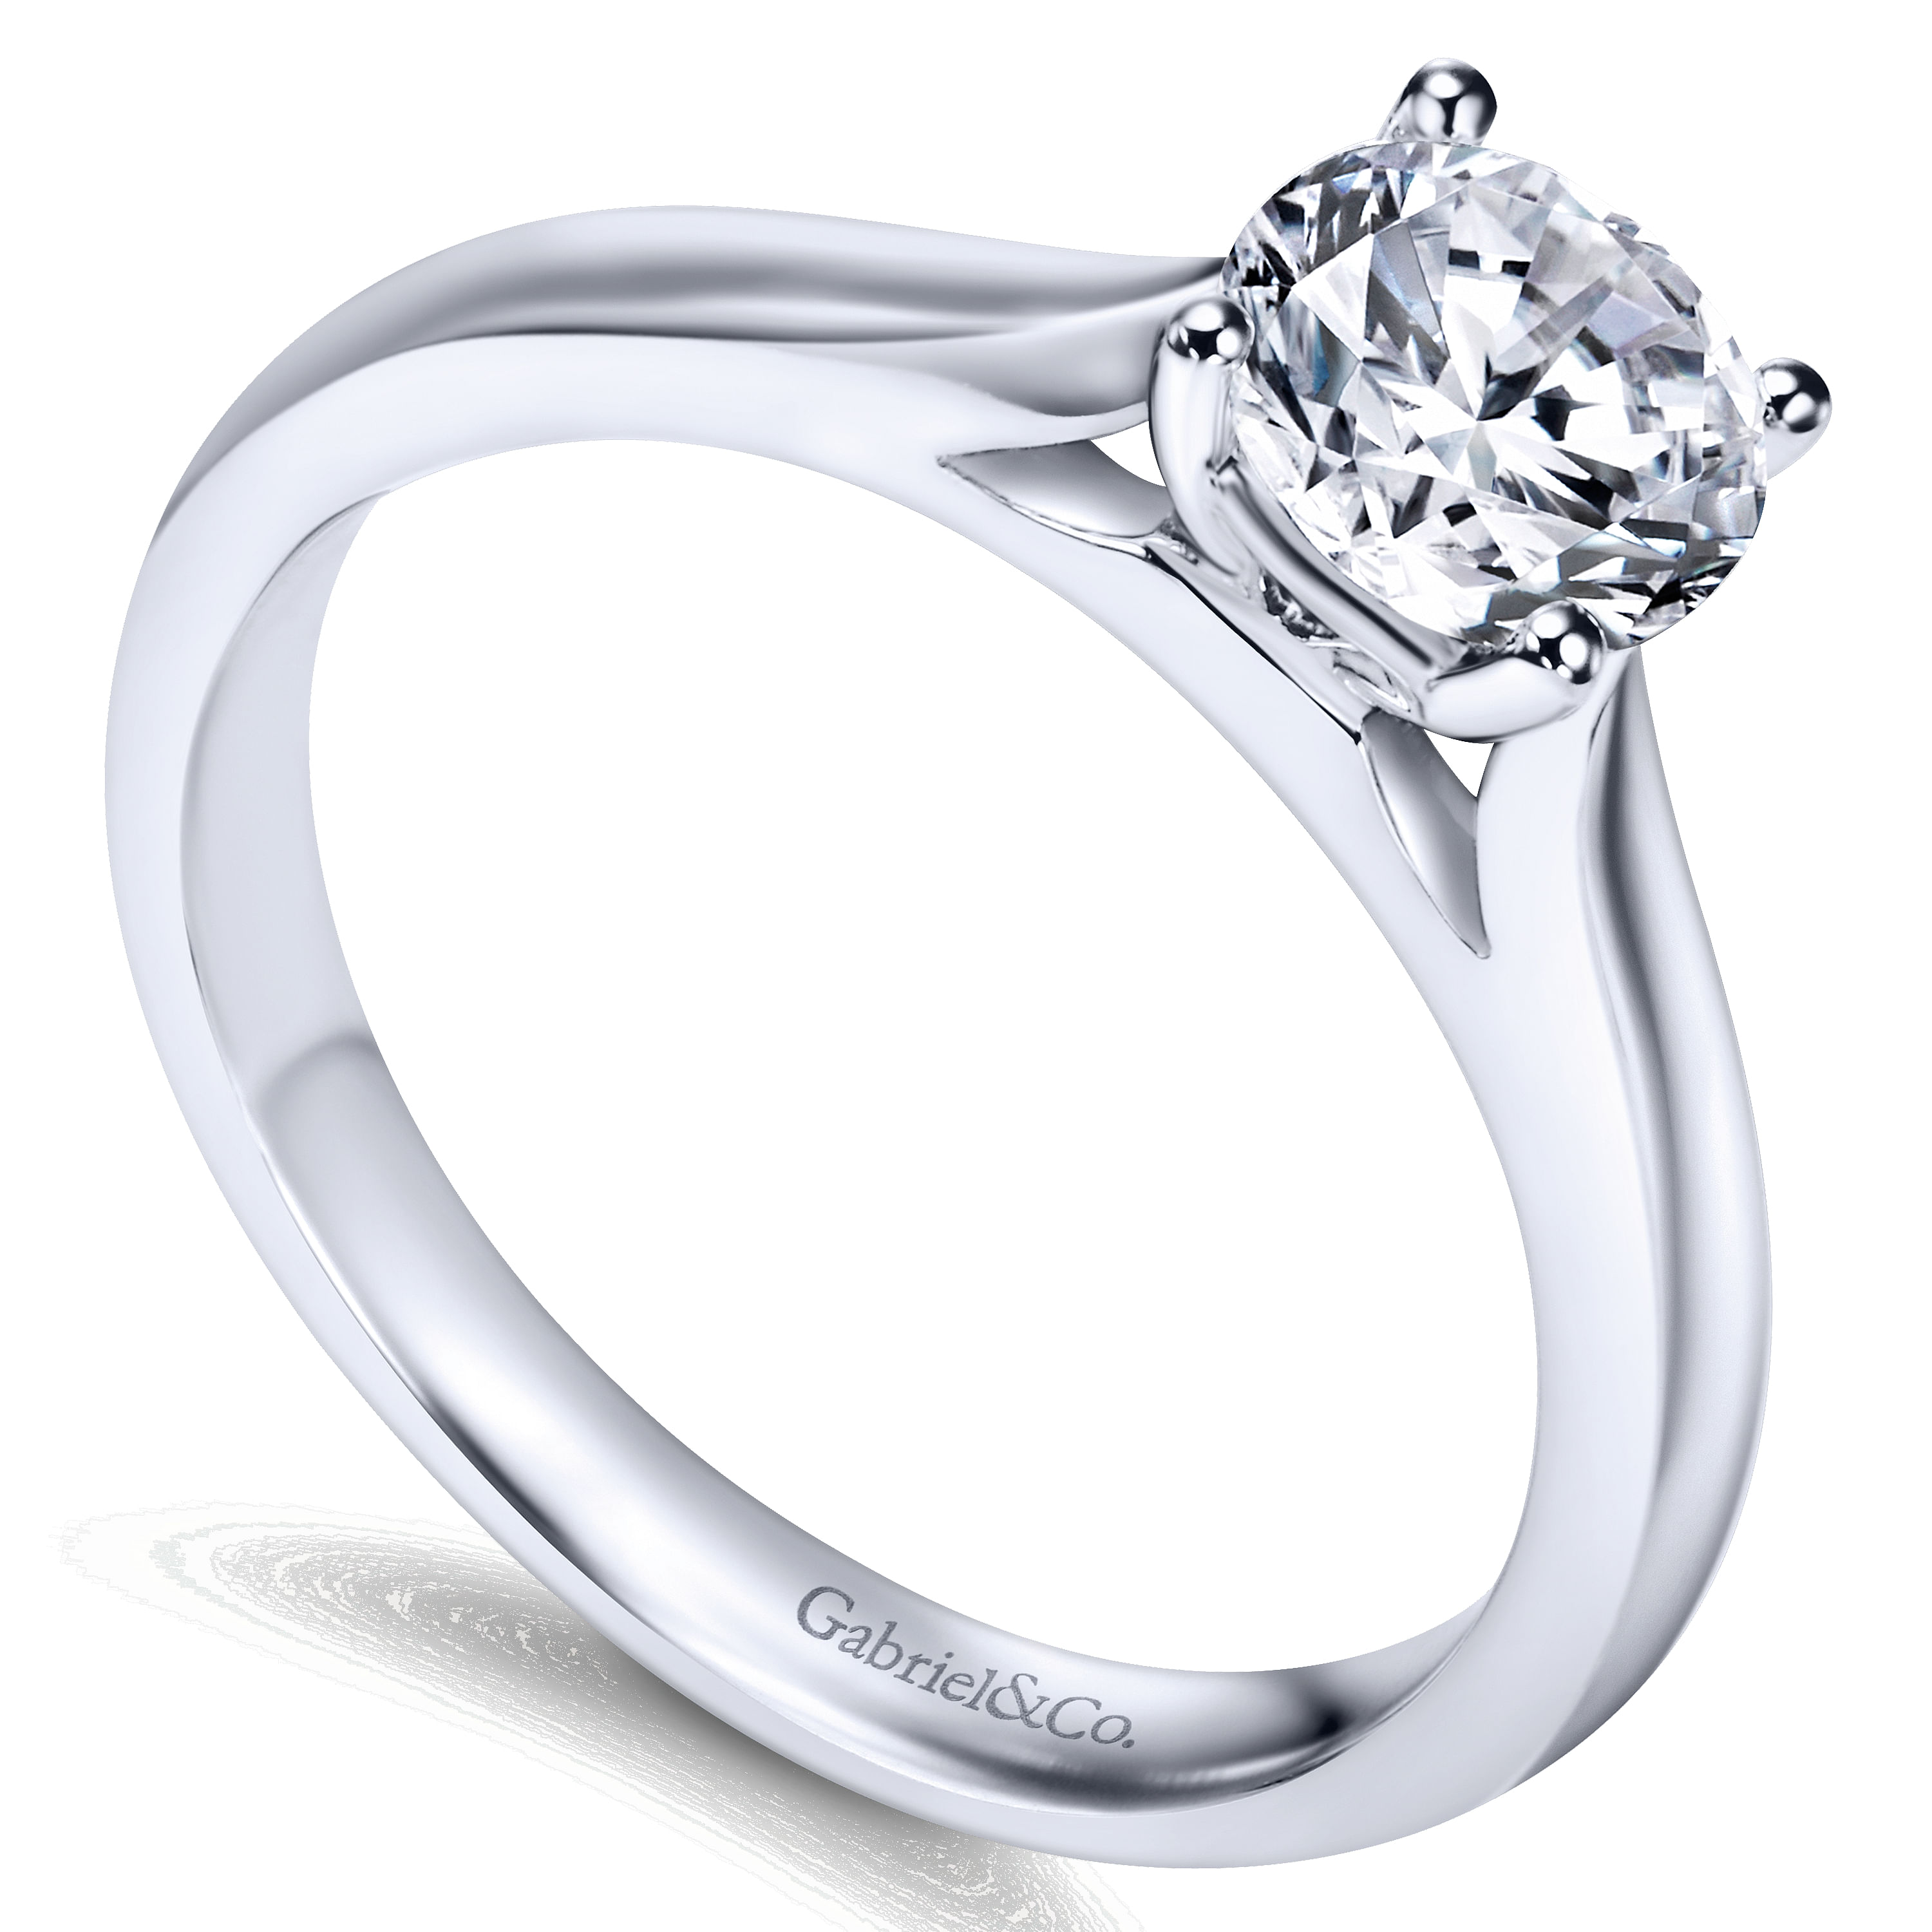 Honora - 14K White Gold Round Diamond Engagement Ring - Shot 3